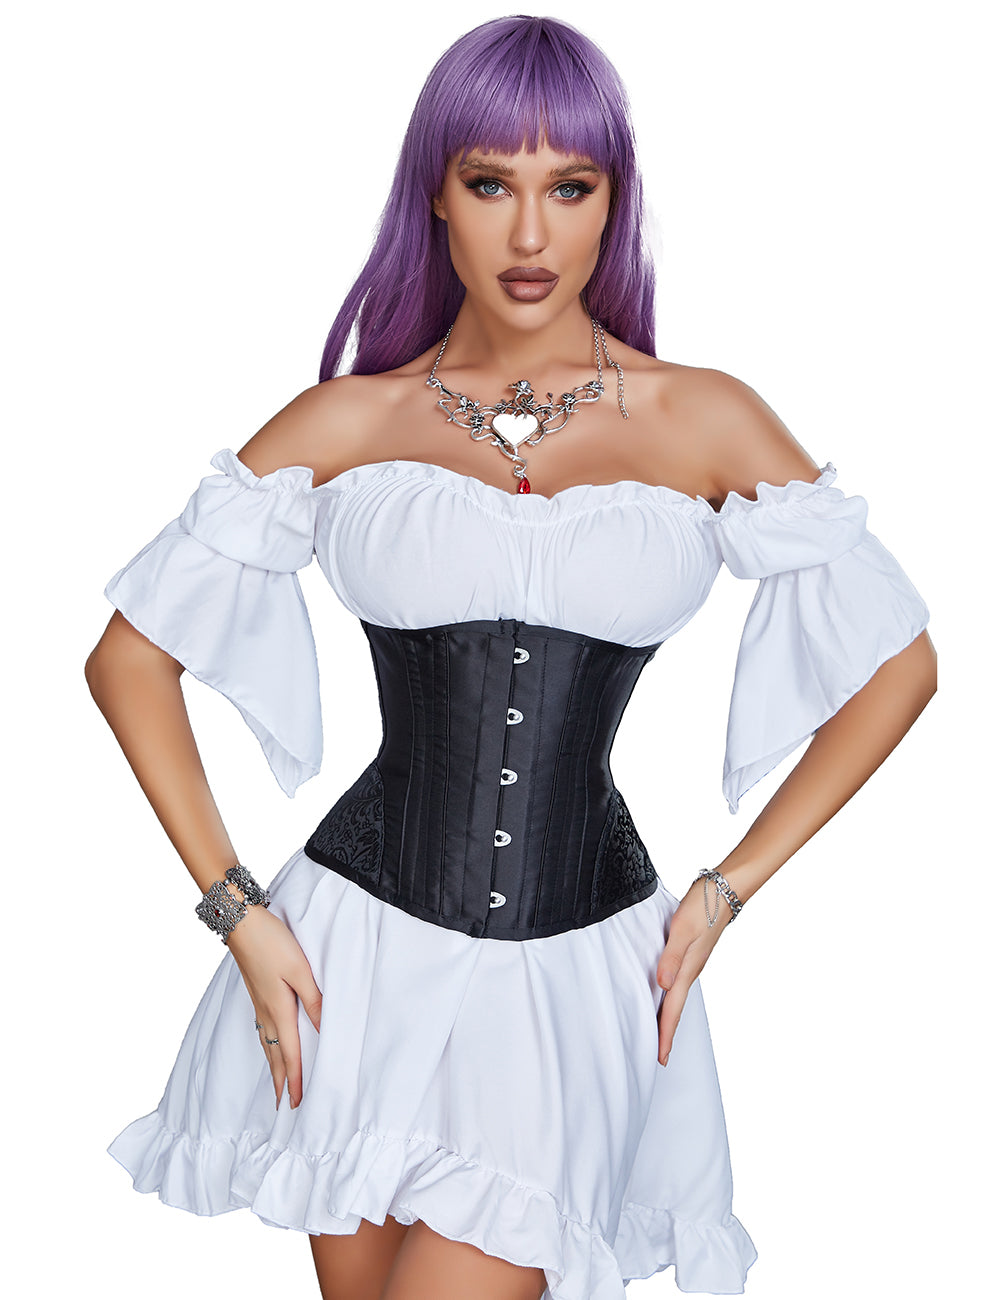 ohyeah woman satin corset jacquard underbust corset black corset with 14 pieces soft steel bones corsets body shaper